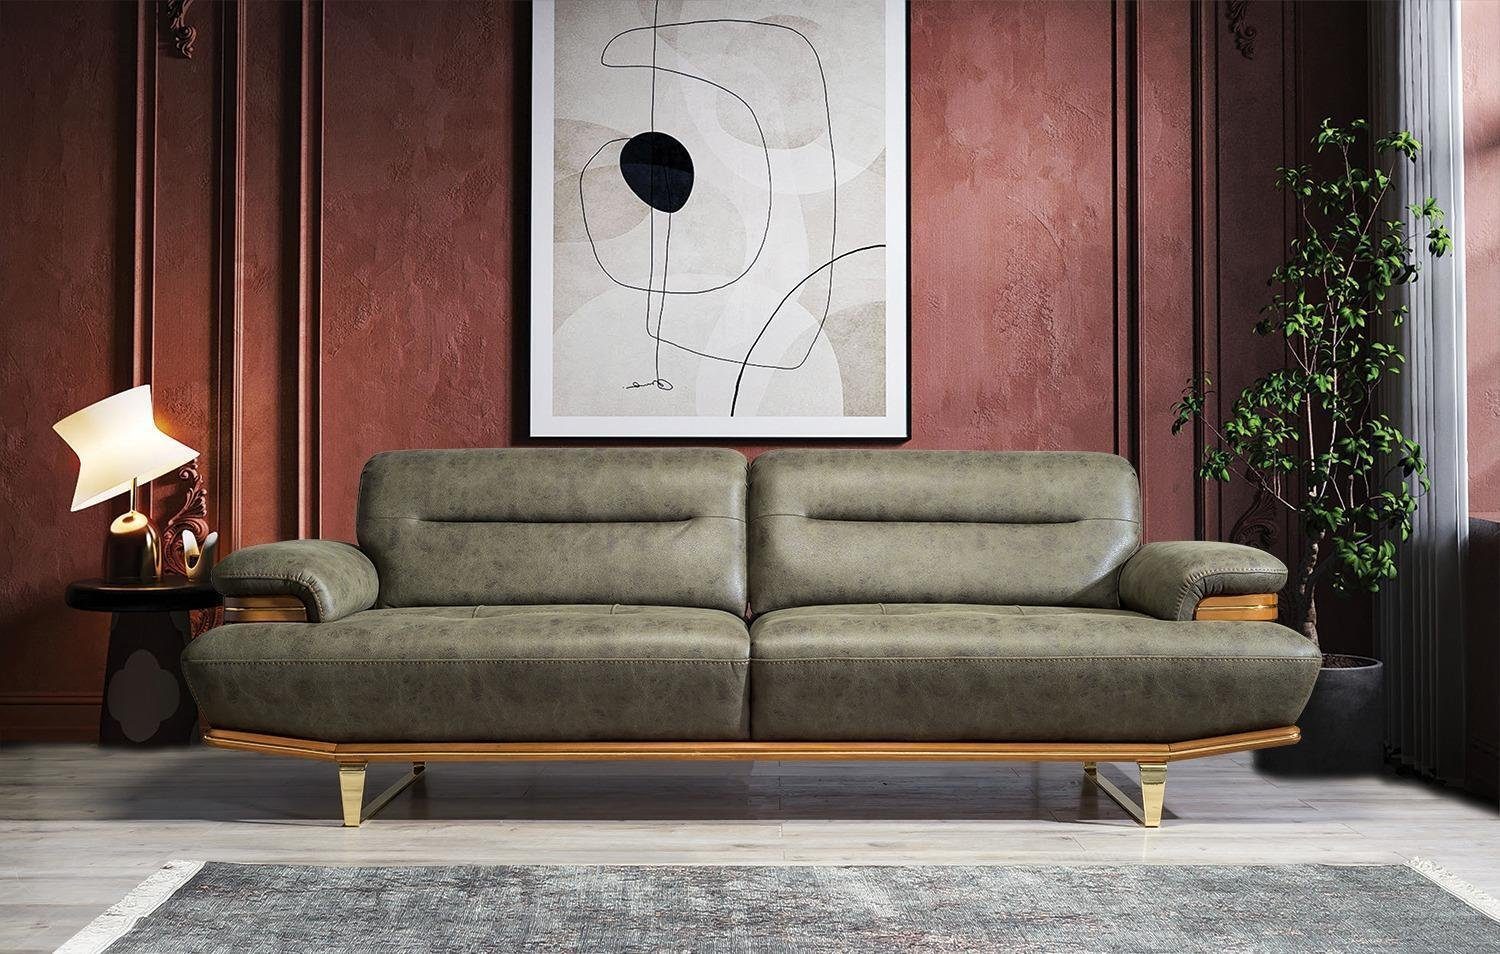 Made Couch Europa Dreisitzer Teile, JVmoebel Möbel 1 Polster, in Wohnzimmer Modern Sofa Sofa Einrichtung